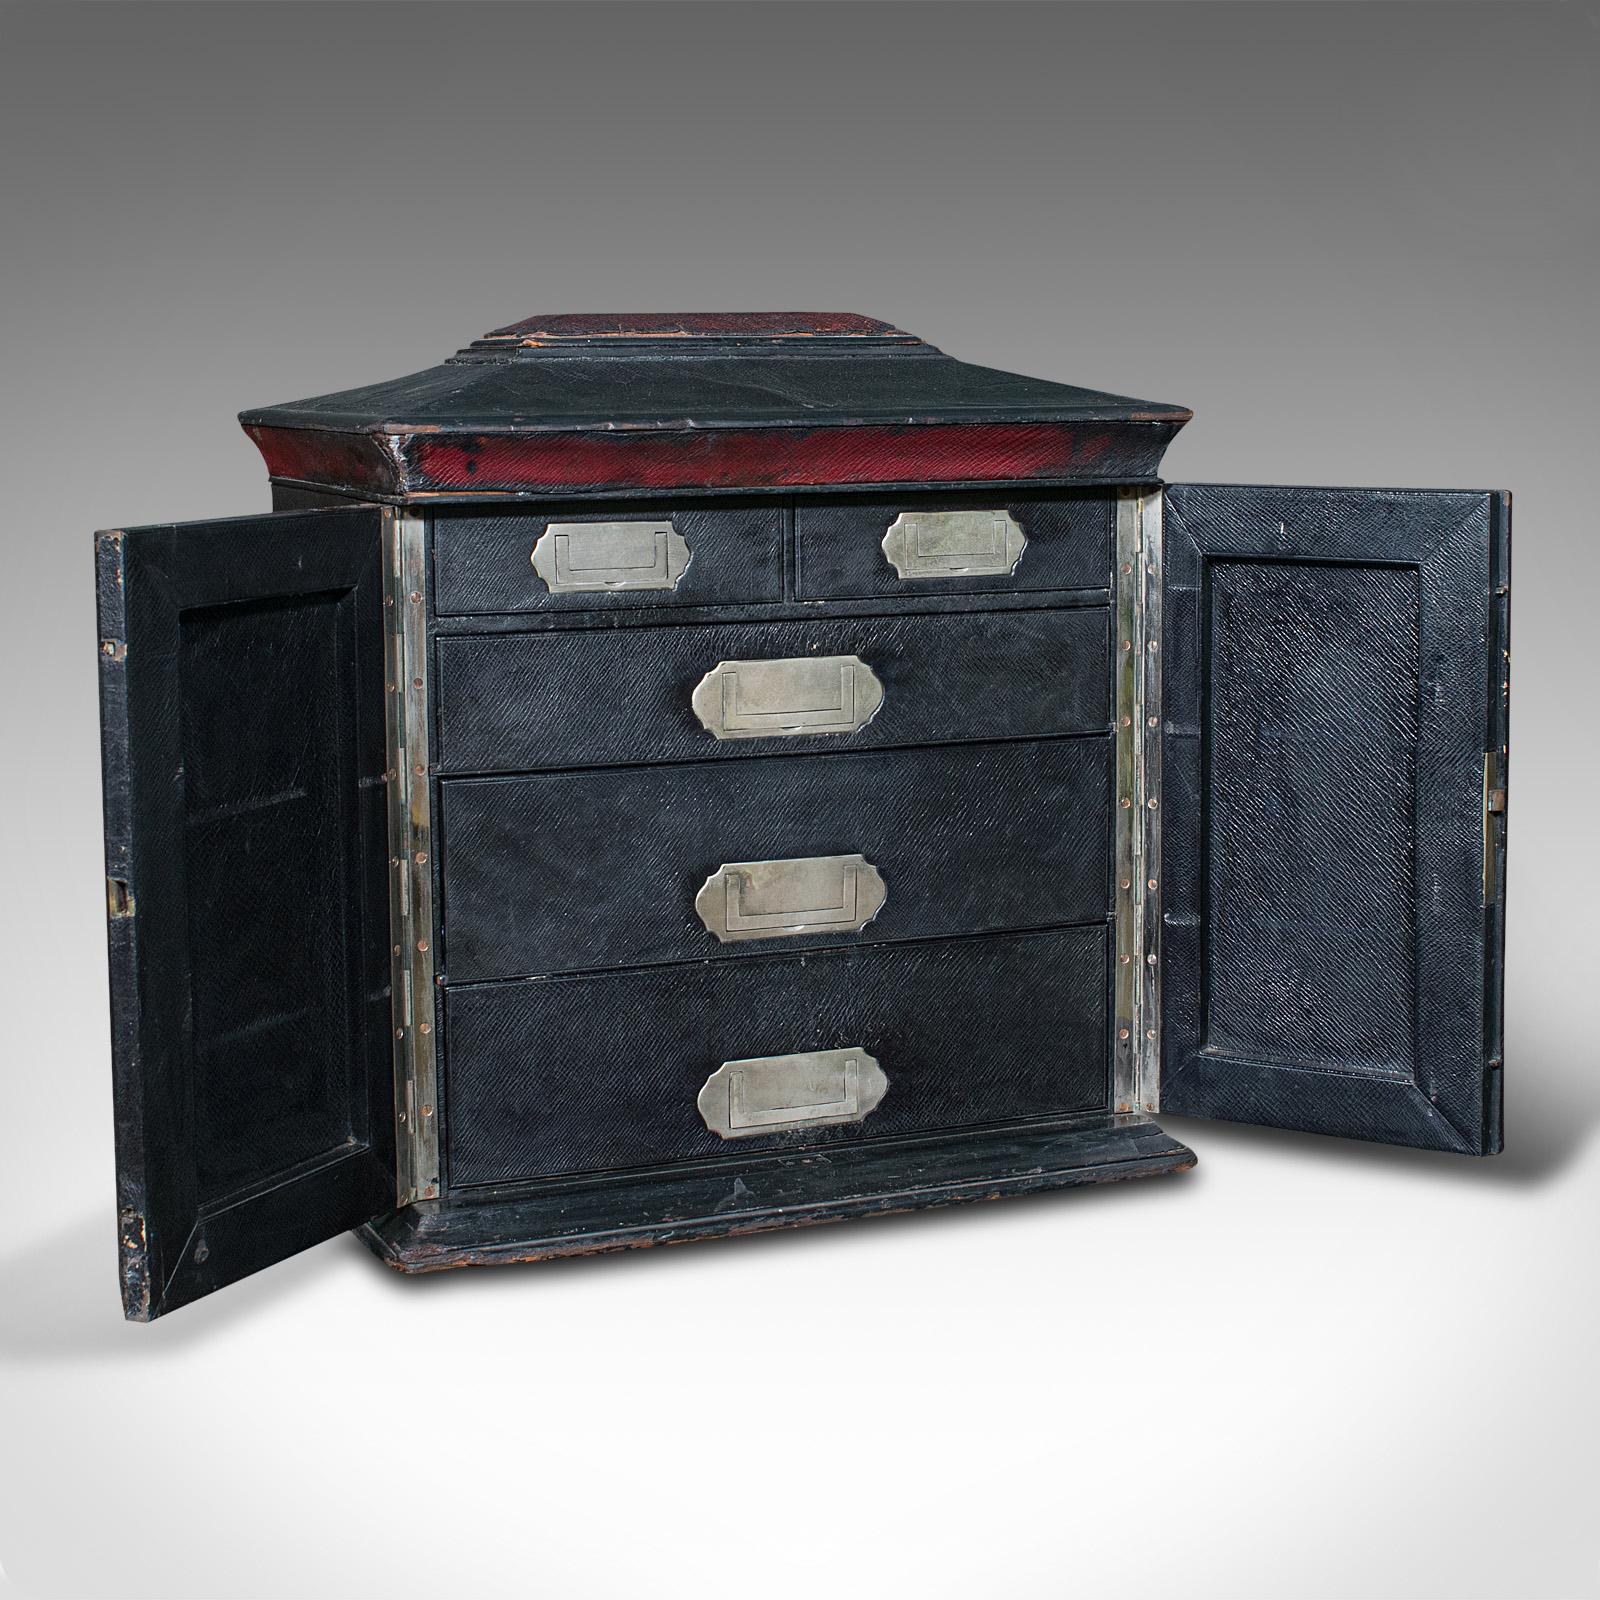 Il s'agit d'une boîte de correspondance ancienne. Cabinet sarcophage anglais relié en cuir avec compartiment secret, attribué à Houghton et Gunn de Londres, datant de la période victorienne, vers 1870.

Boîte à papier de qualité pour gentleman